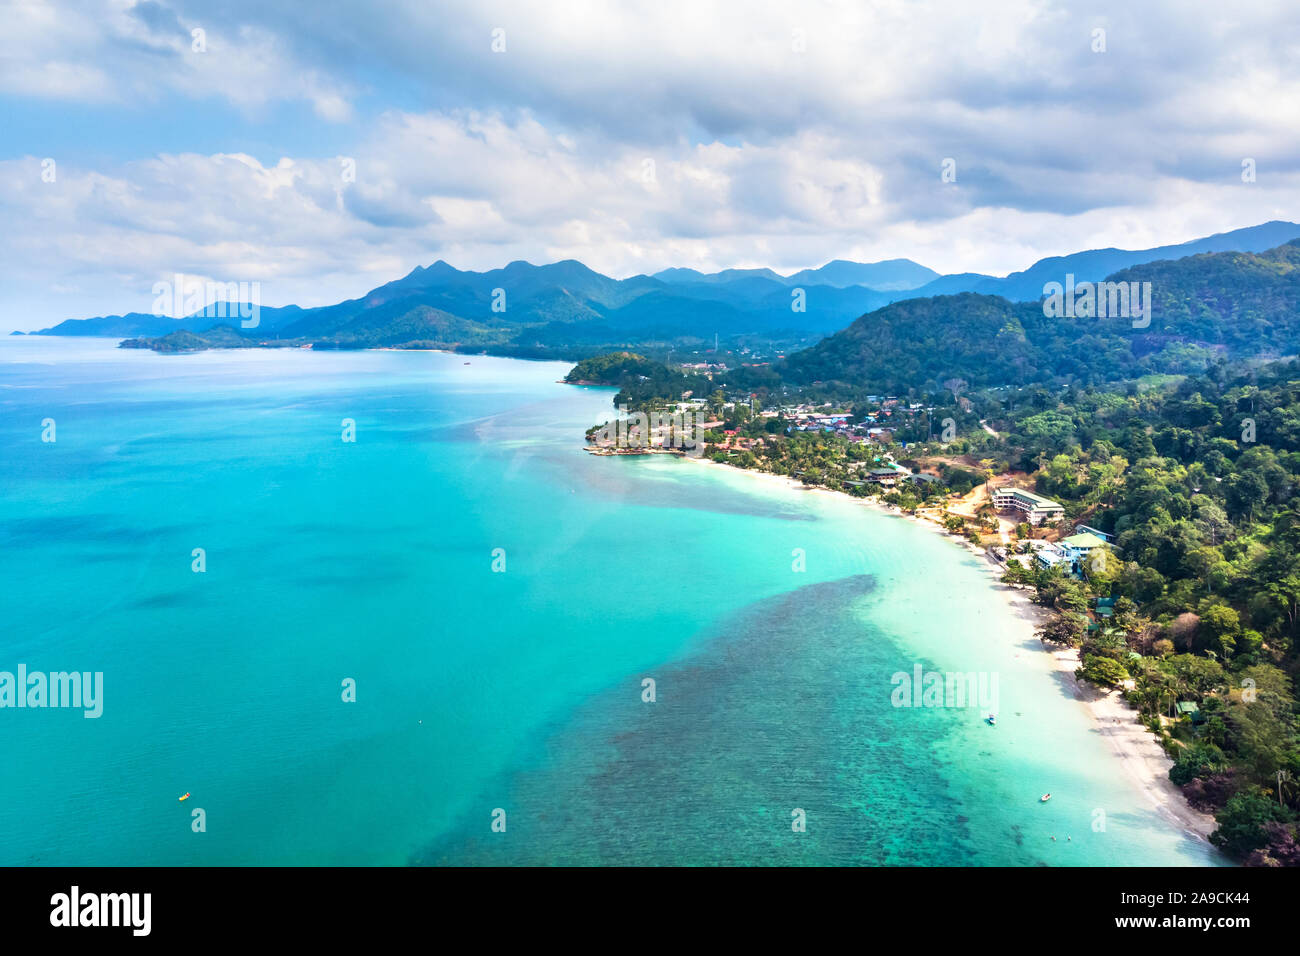 Vista aerea di isola tropicale sulla spiaggia costa e trasparente con acqua del mare turchese e il paesaggio della foresta pluviale, vacanze vacanze a destinazione con t Foto Stock